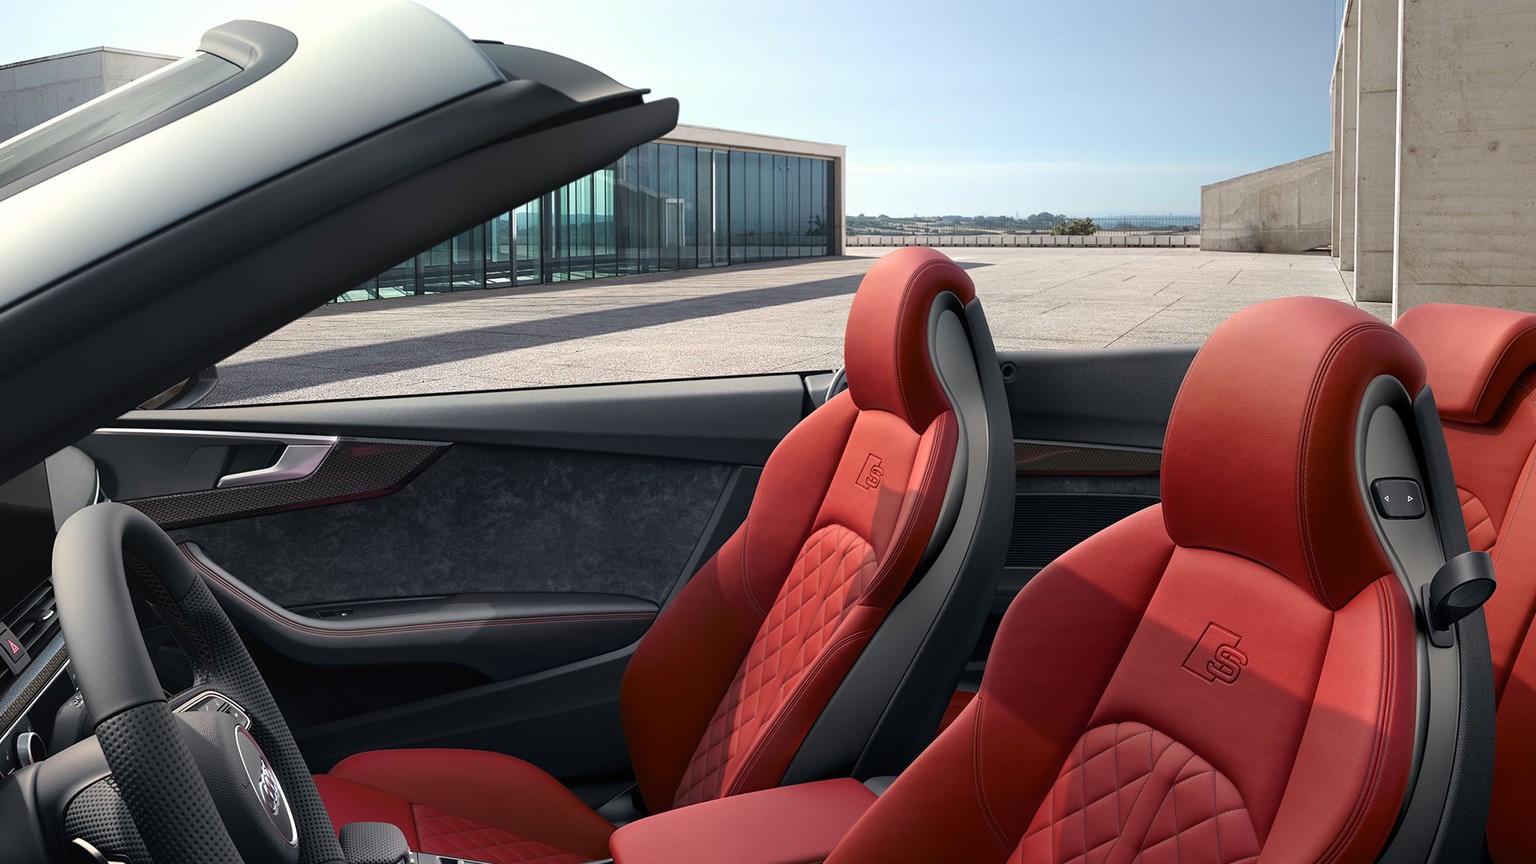 Audi S5 Cabriolet interior - Audi Australia